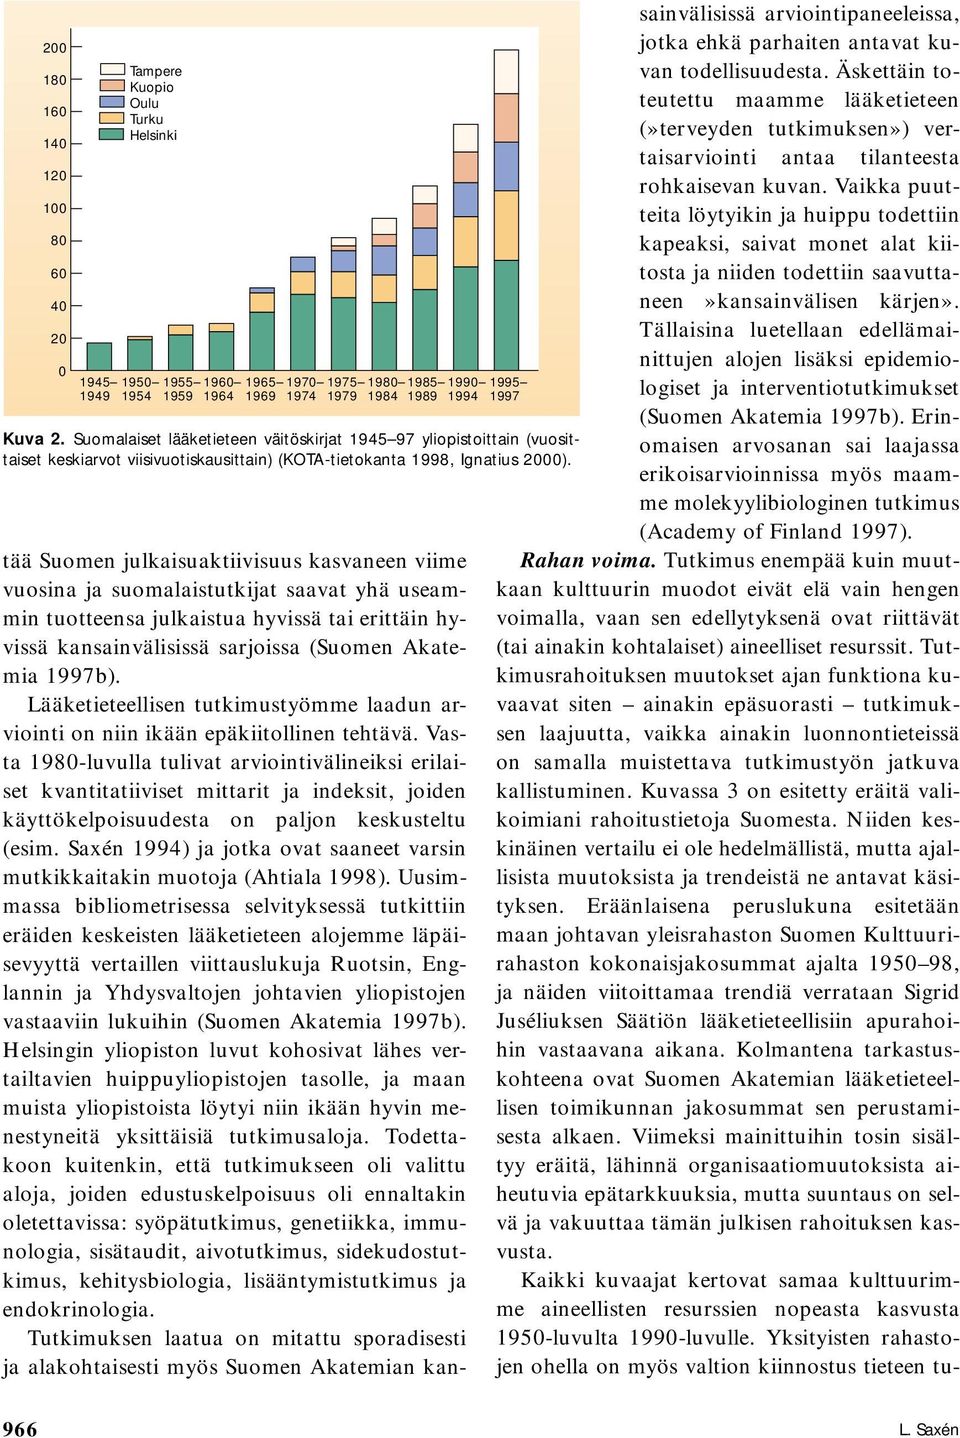 tää Suomen julkaisuaktiivisuus kasvaneen viime vuosina ja suomalaistutkijat saavat yhä useammin tuotteensa julkaistua hyvissä tai erittäin hyvissä kansainvälisissä sarjoissa (Suomen Akatemia 1997b).